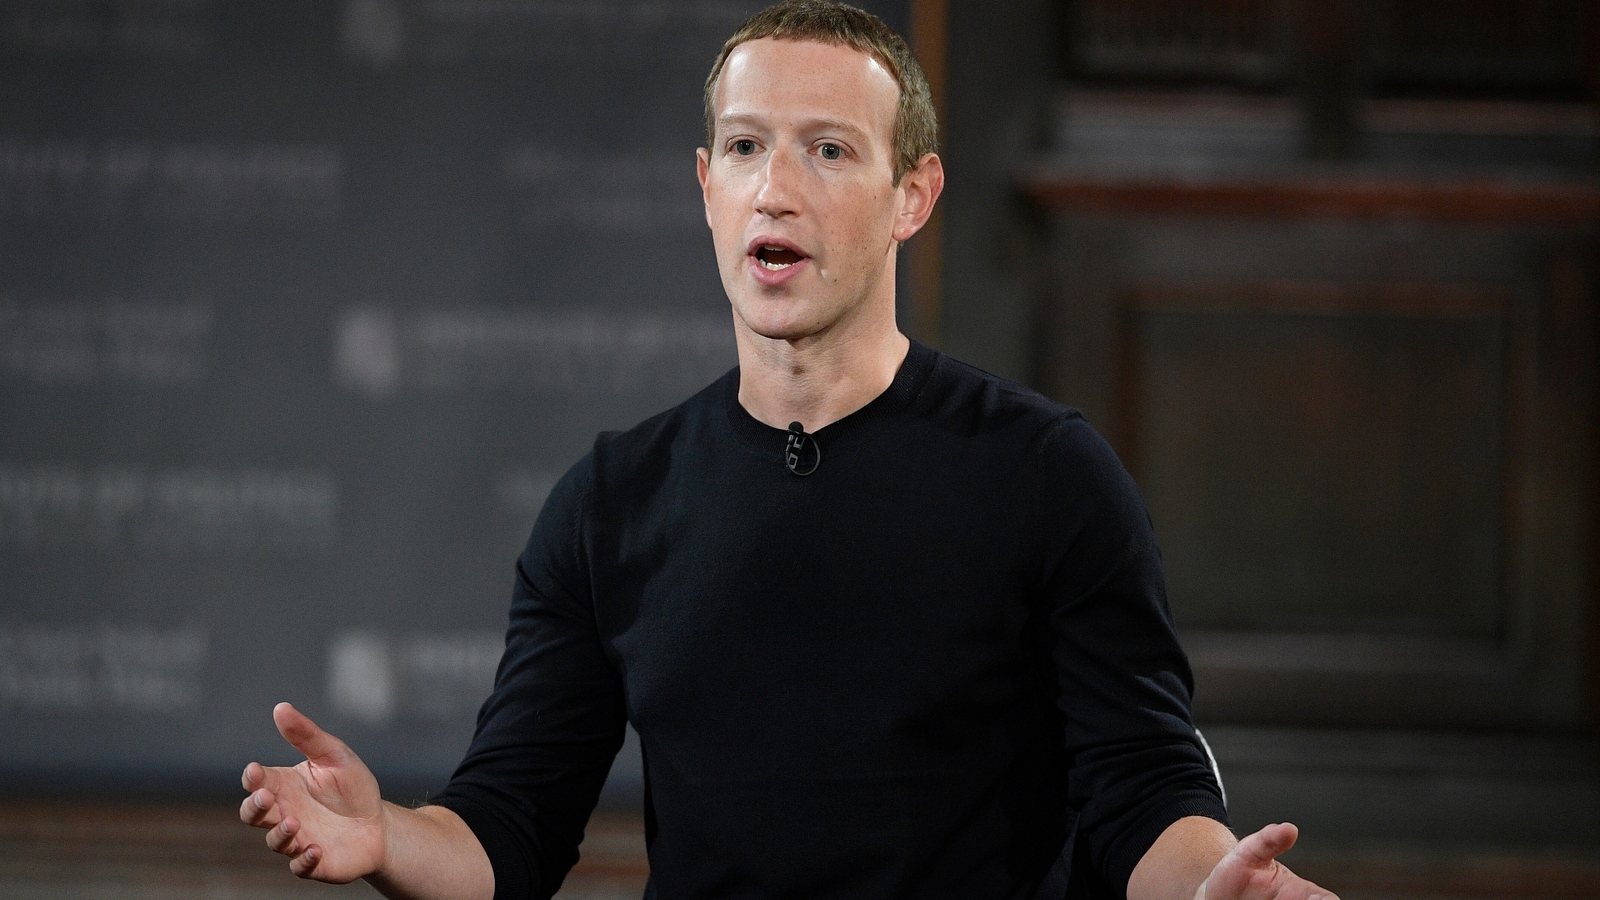 El director ejecutivo de Meta, Mark Zuckerberg, iniciará la conferencia de desarrolladores Connect centrada en la IA y la realidad virtual